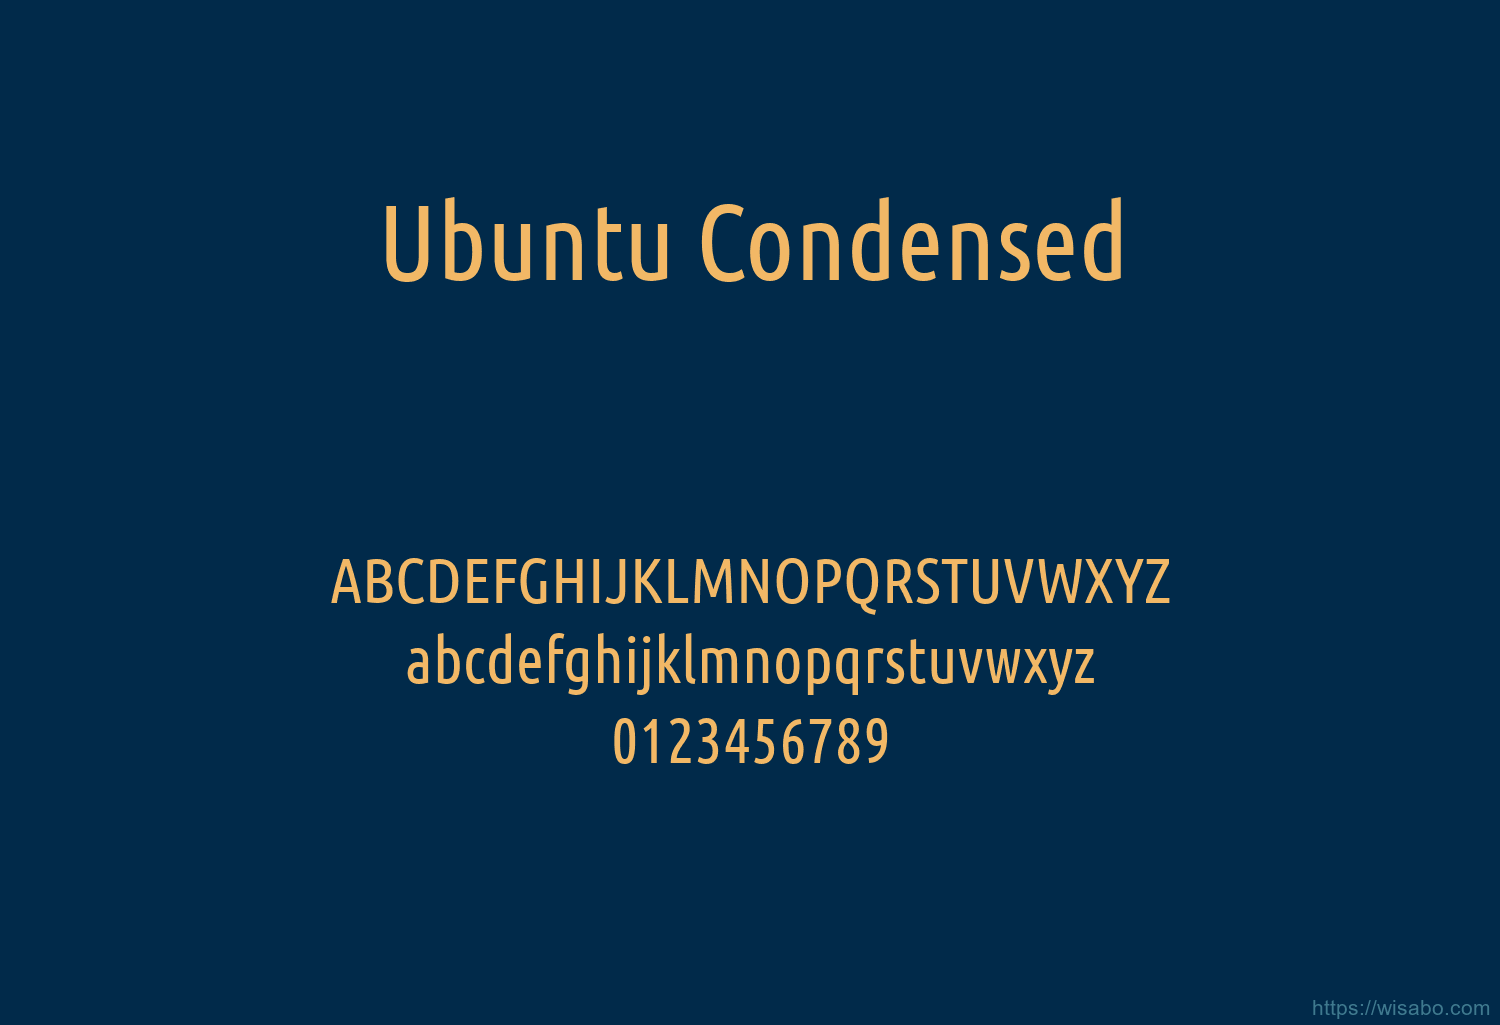 Ubuntu Condensed